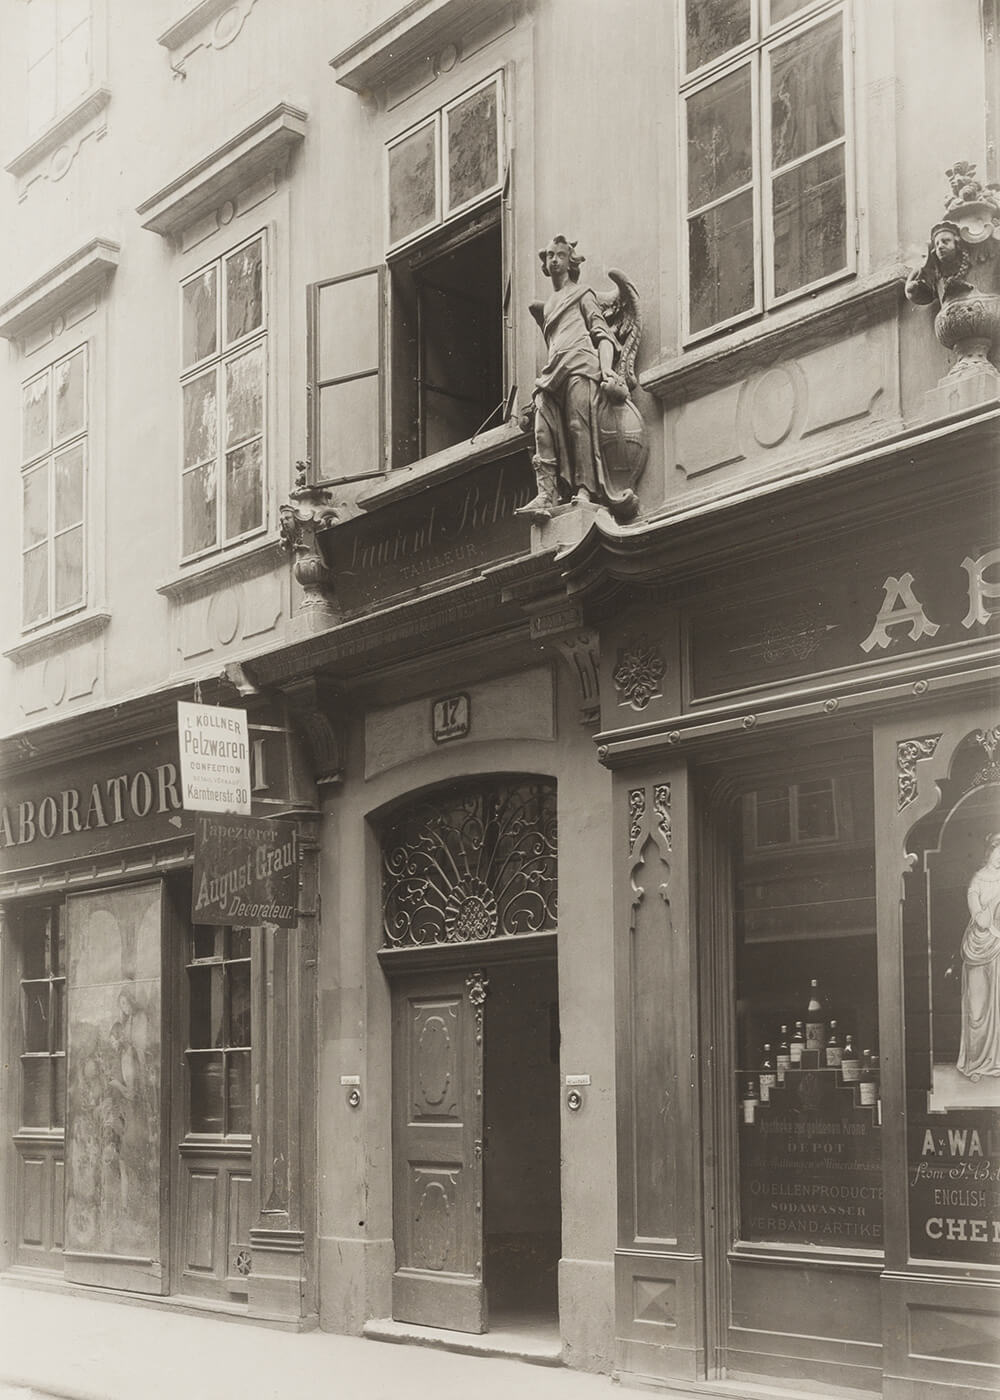 Himmelfportgasse 17, Fotografie Ende 19. Jahrhundert, Wien Museum. Links des Hauseingangs das Geschäftsschild, rechts davon die Darstellung einer Hygiea. 